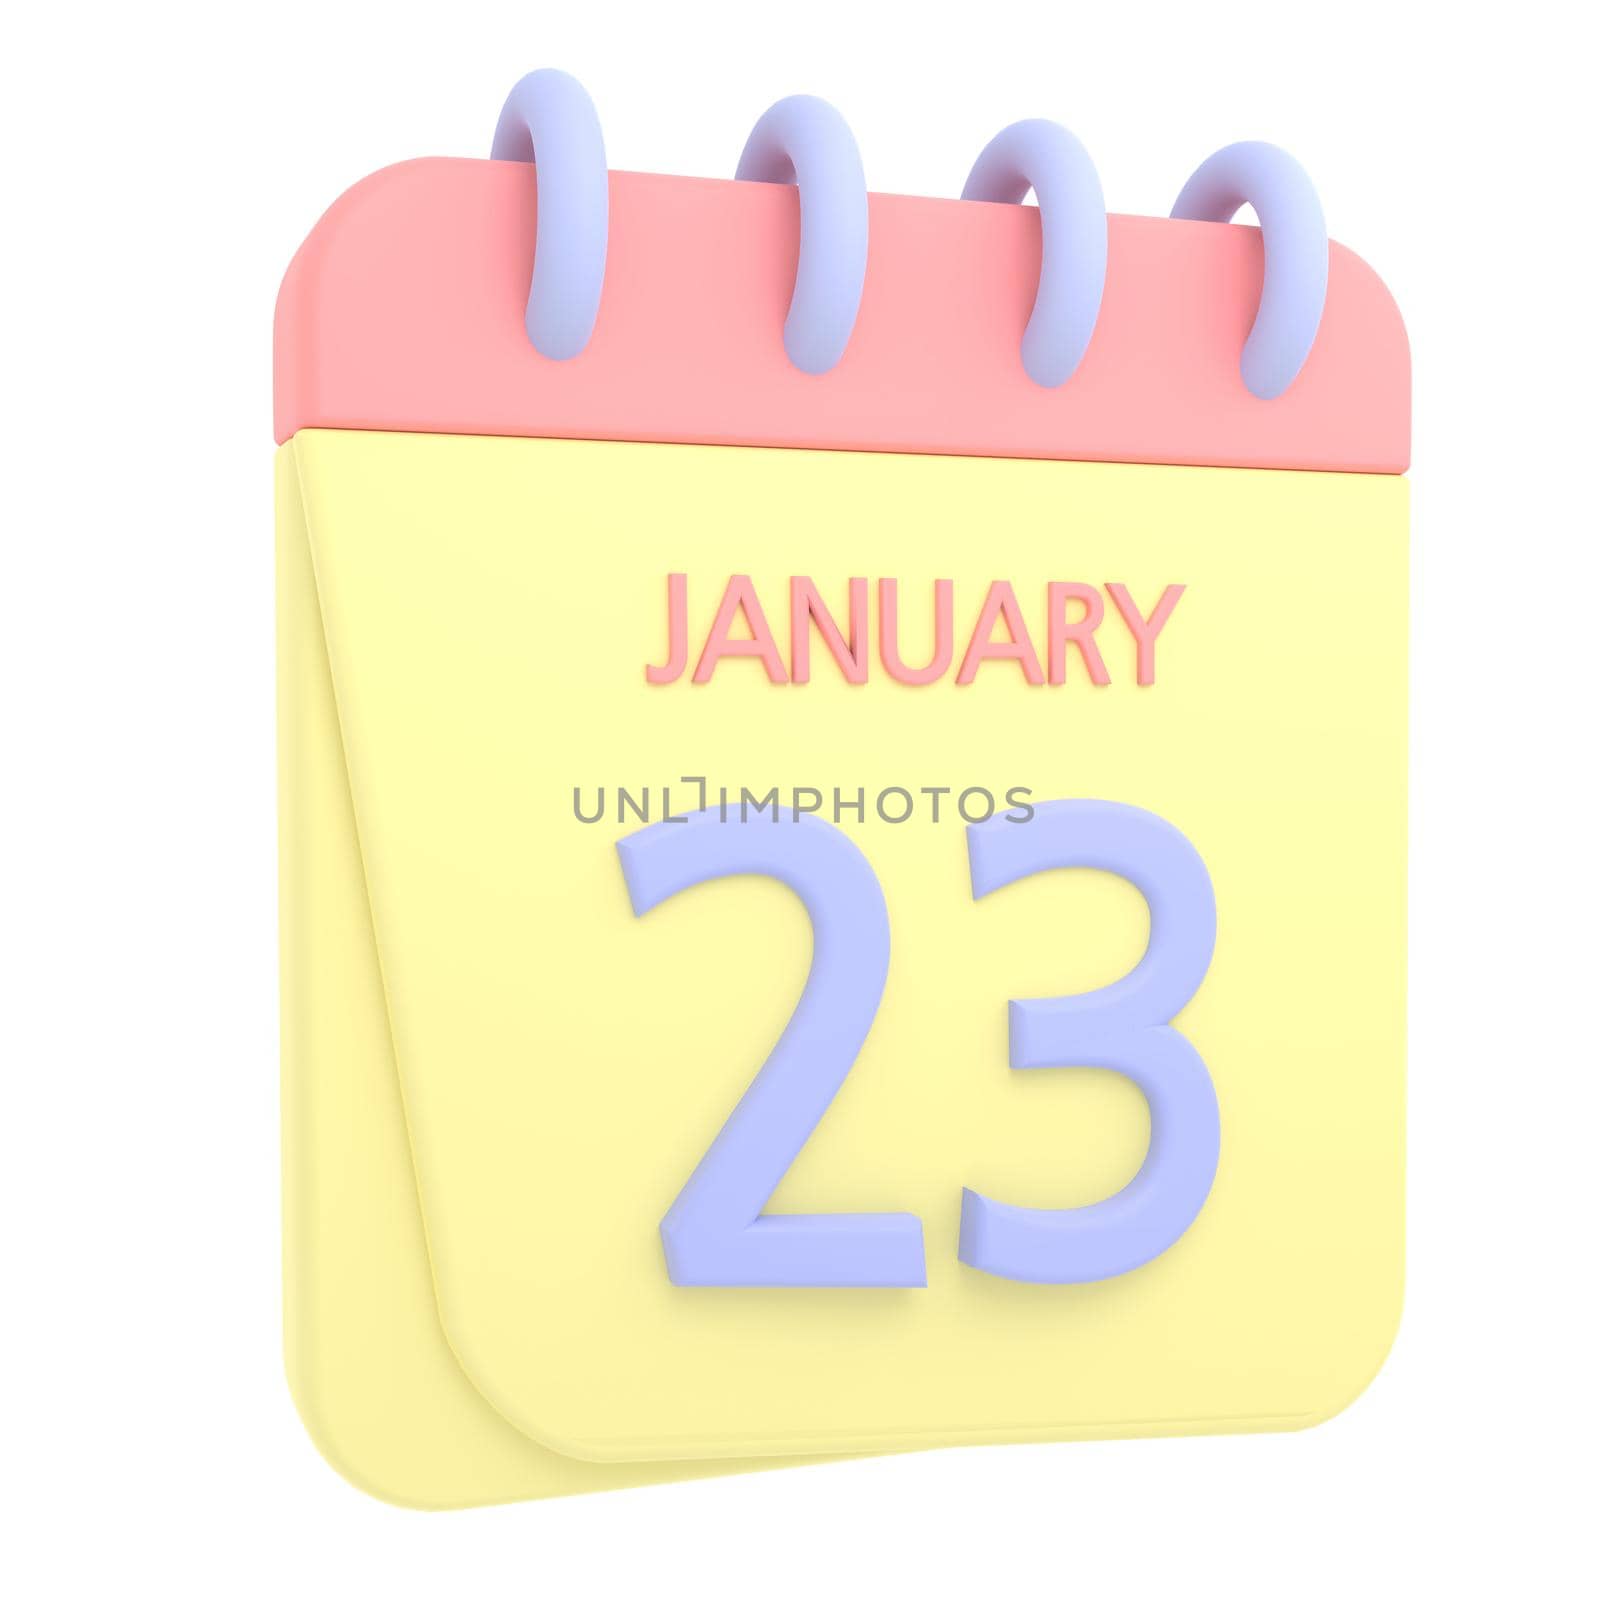 23rd January 3D calendar icon by AnnaMarin